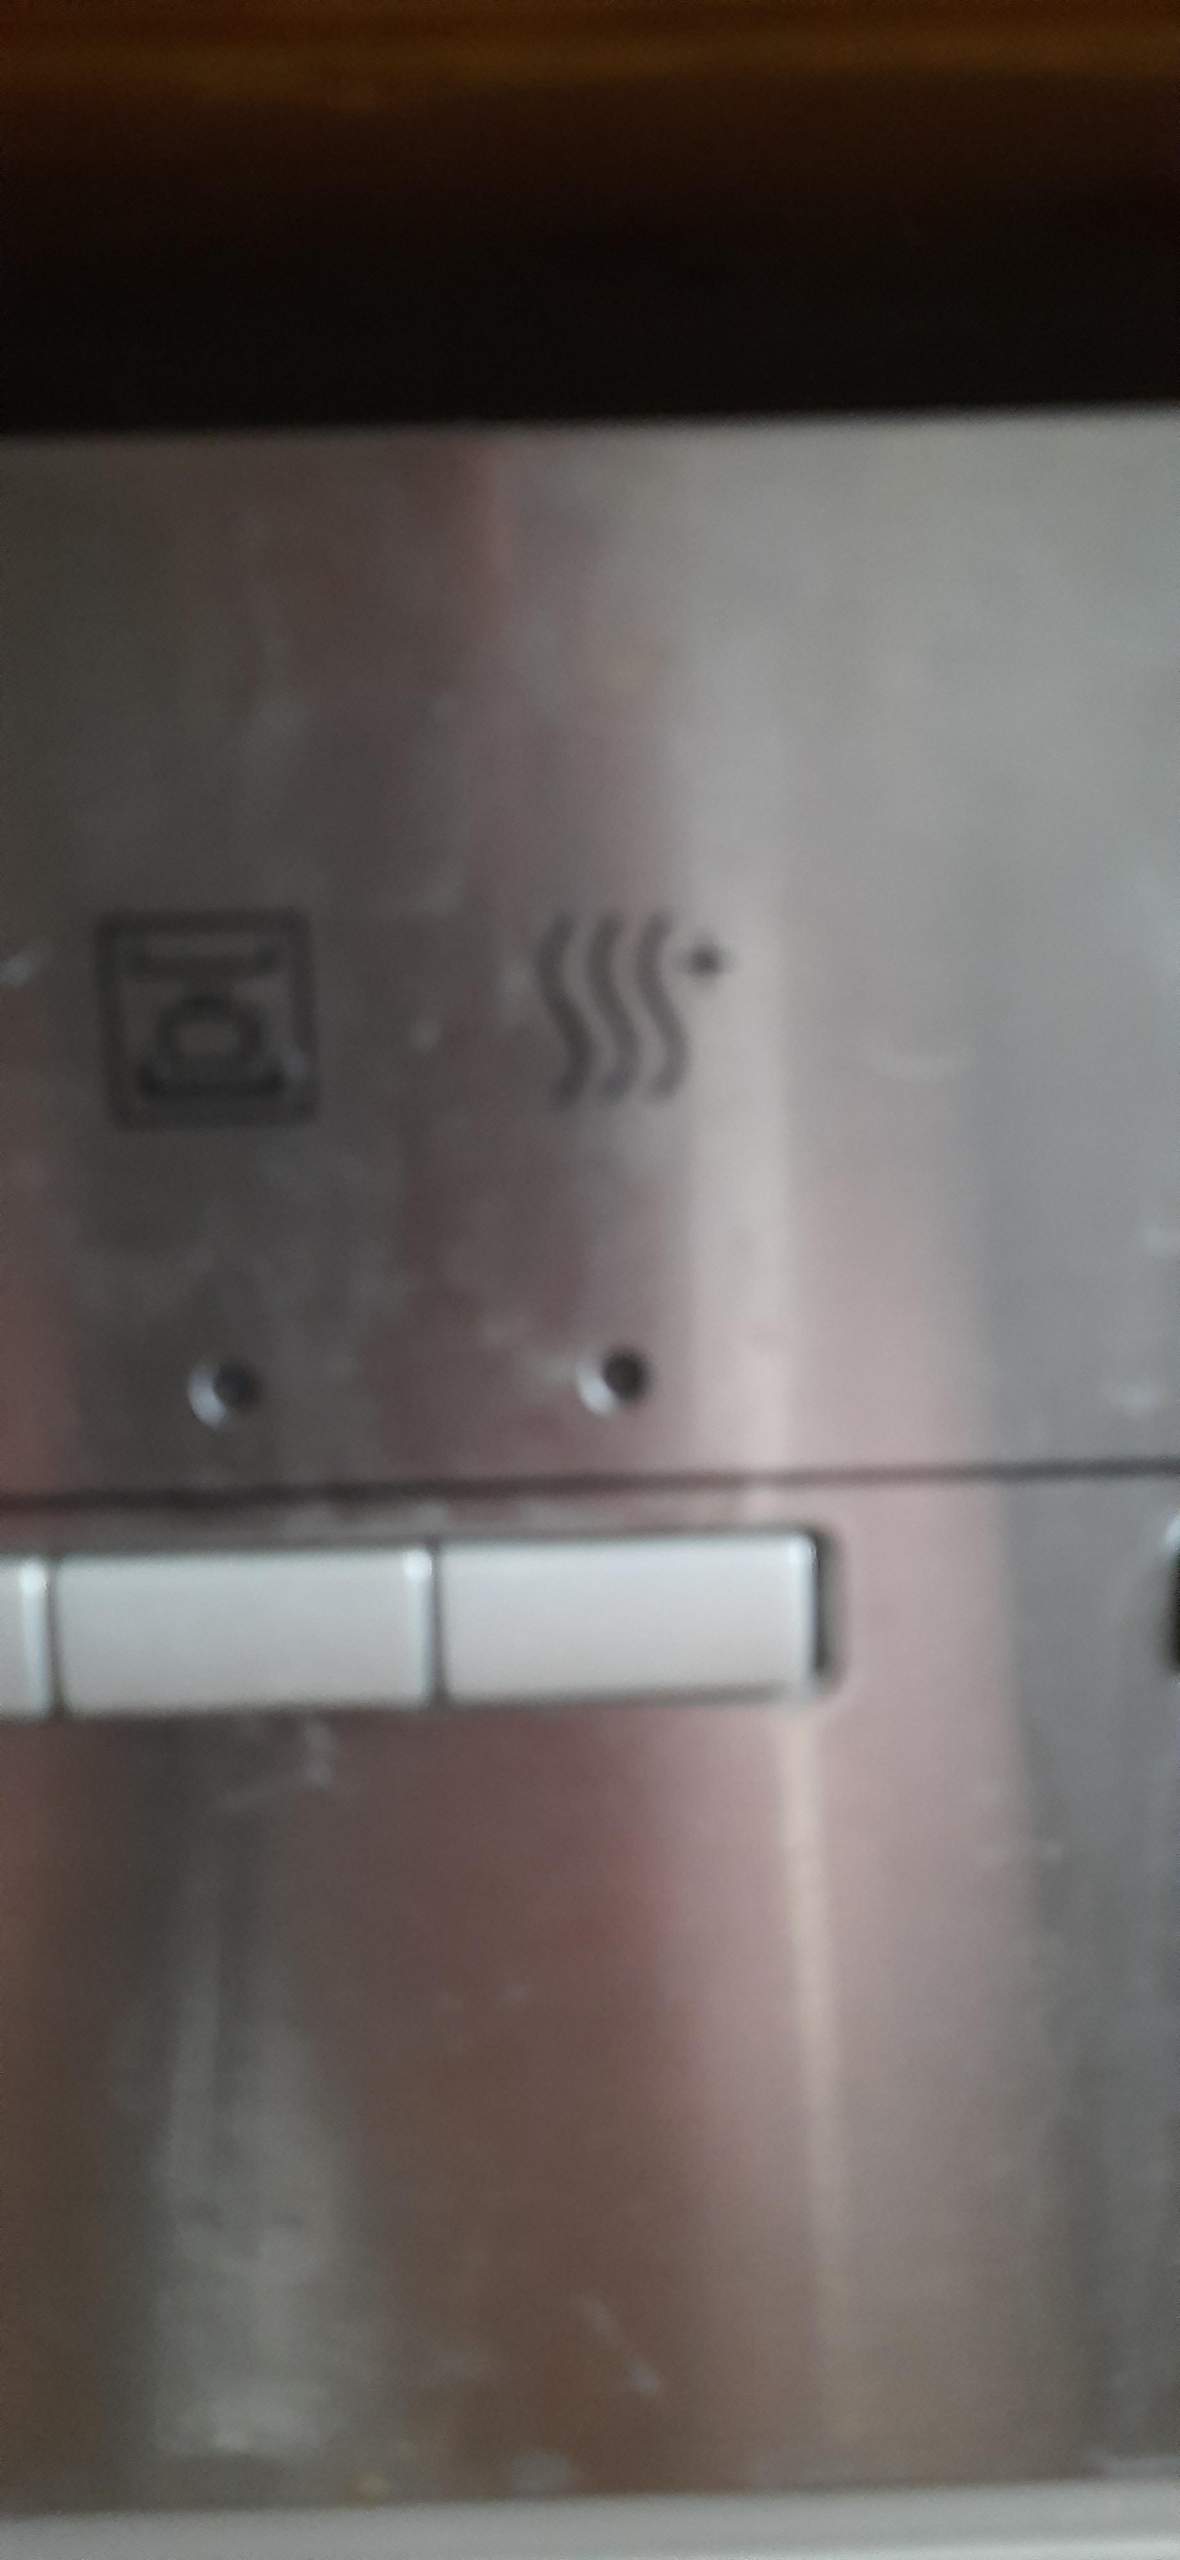 Symbole bedeutung spülmaschine